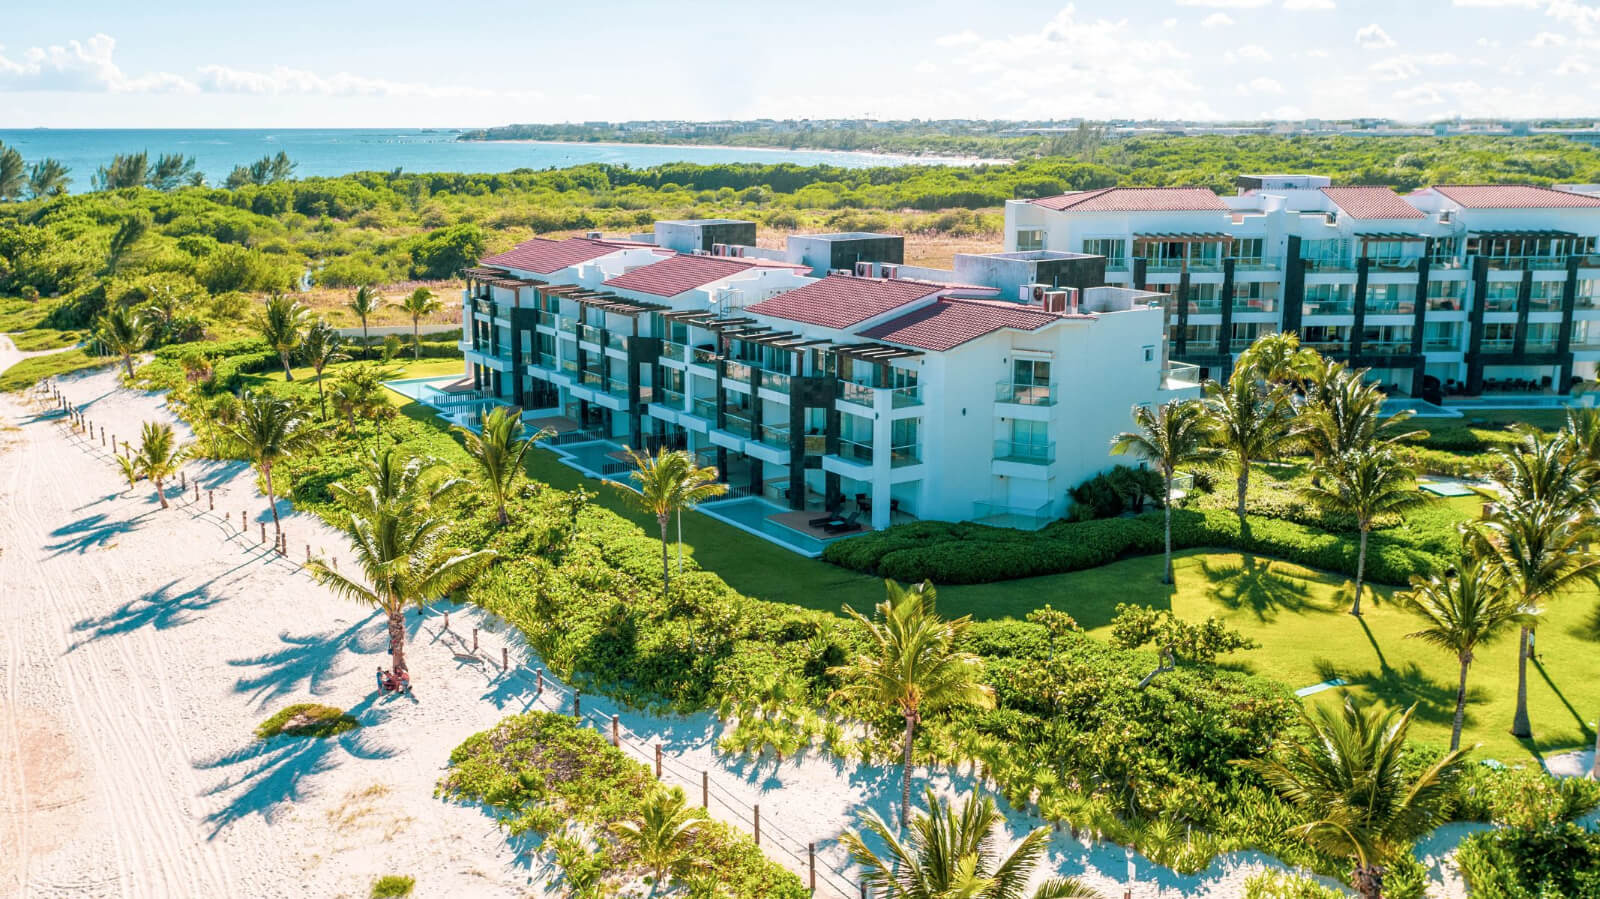 Penthouse terraza de 140 m2, vista al campo de golf, cuarto de servicio, casa club, cenotes, club de playa, parques, 2 estacionamientos tech